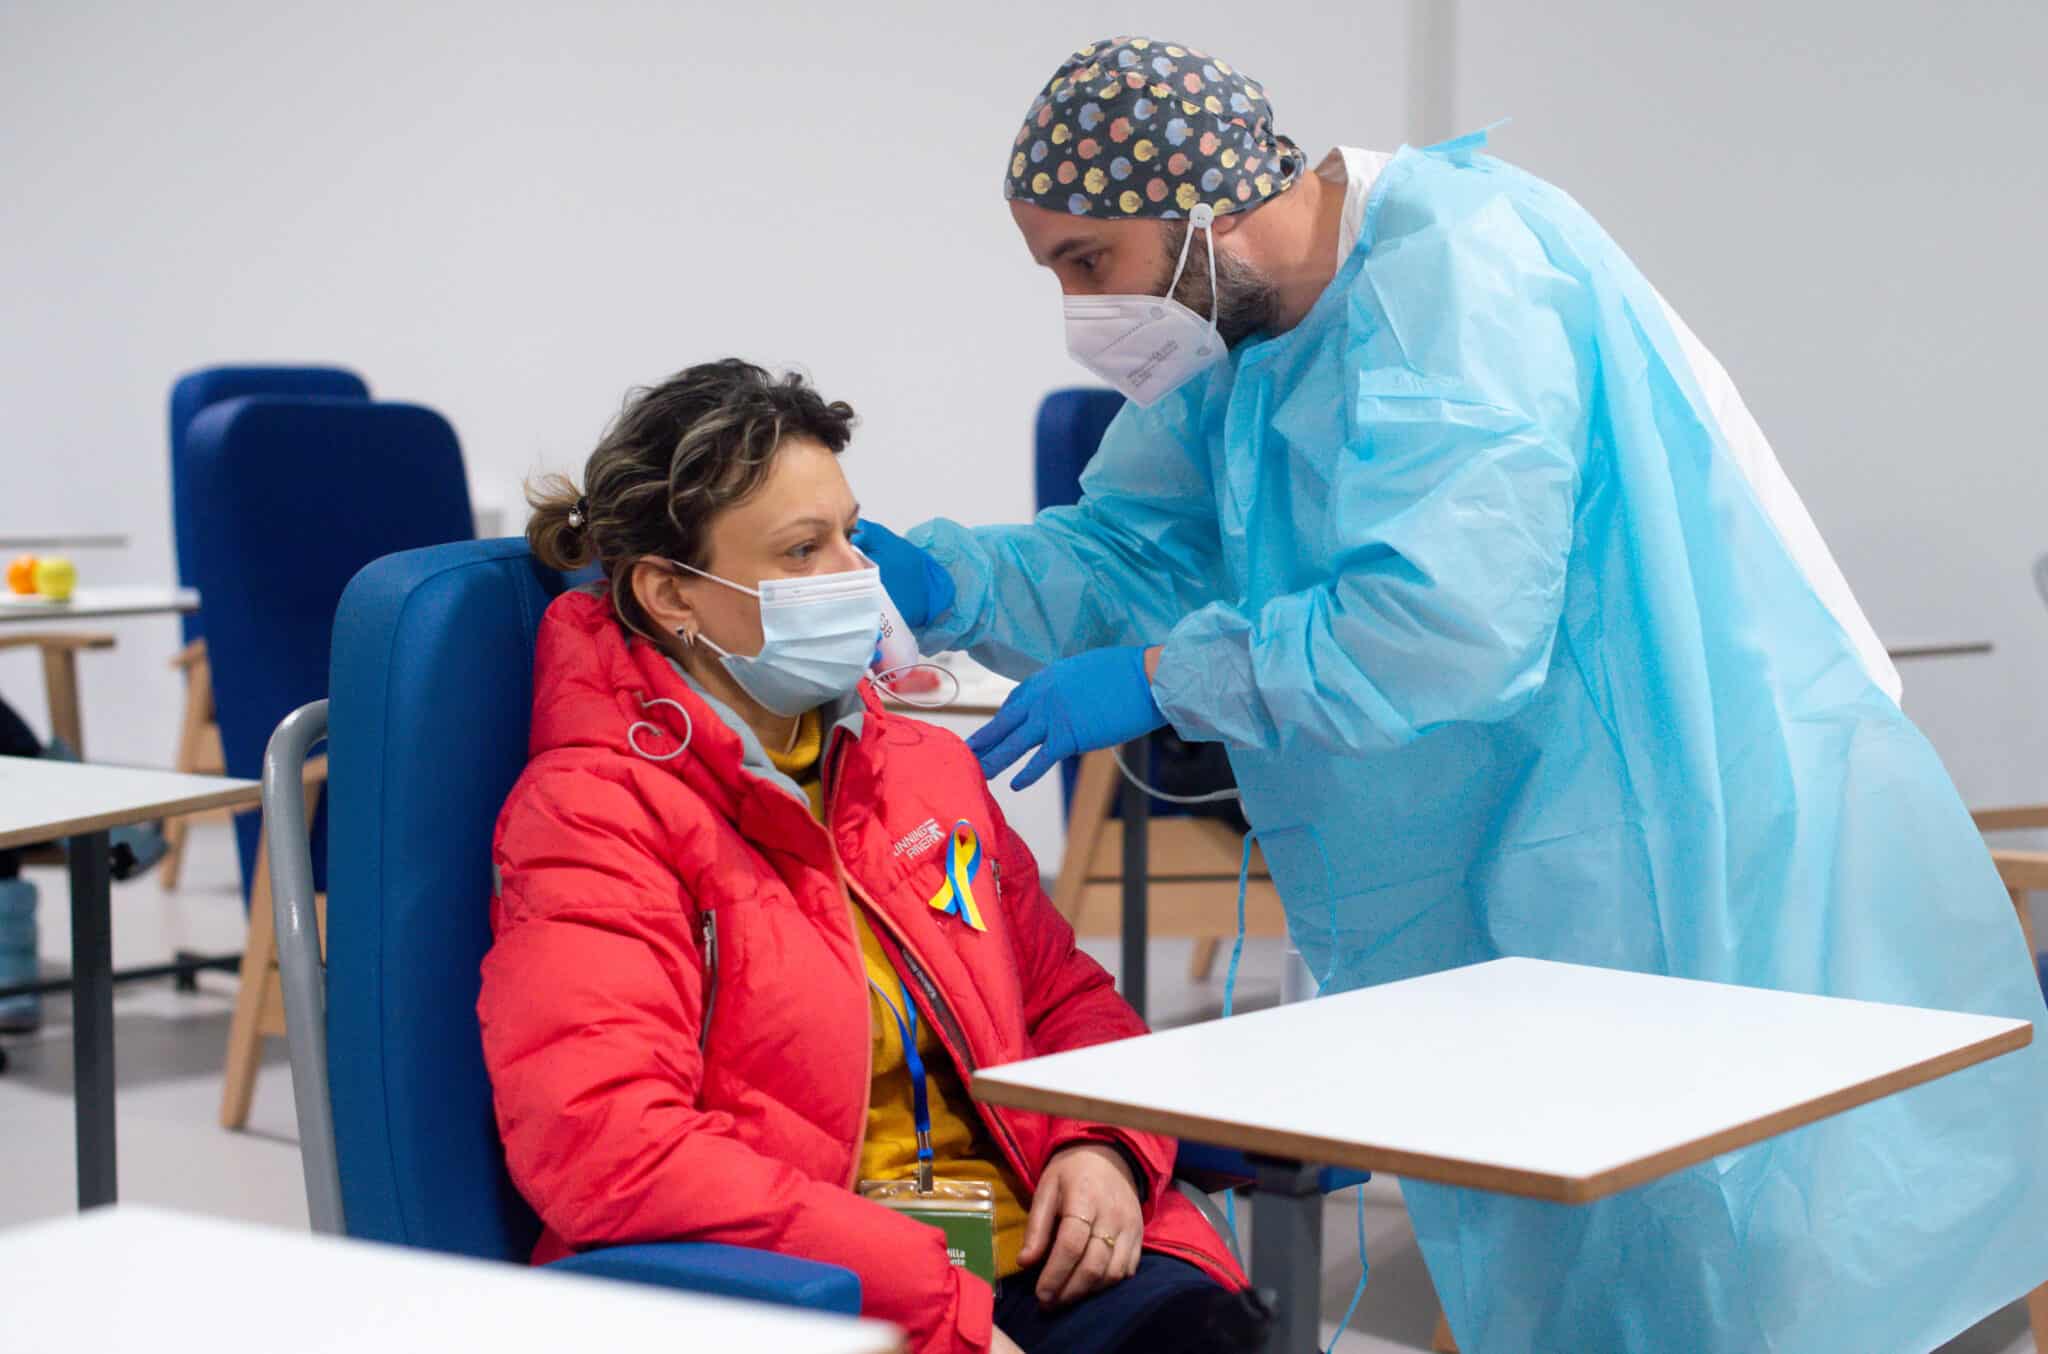 Un trabajador sanitario revisa a una persona procedente de Ucrania en las instalaciones del Hospital Enfermera Isabel Zendal, en Madrid.